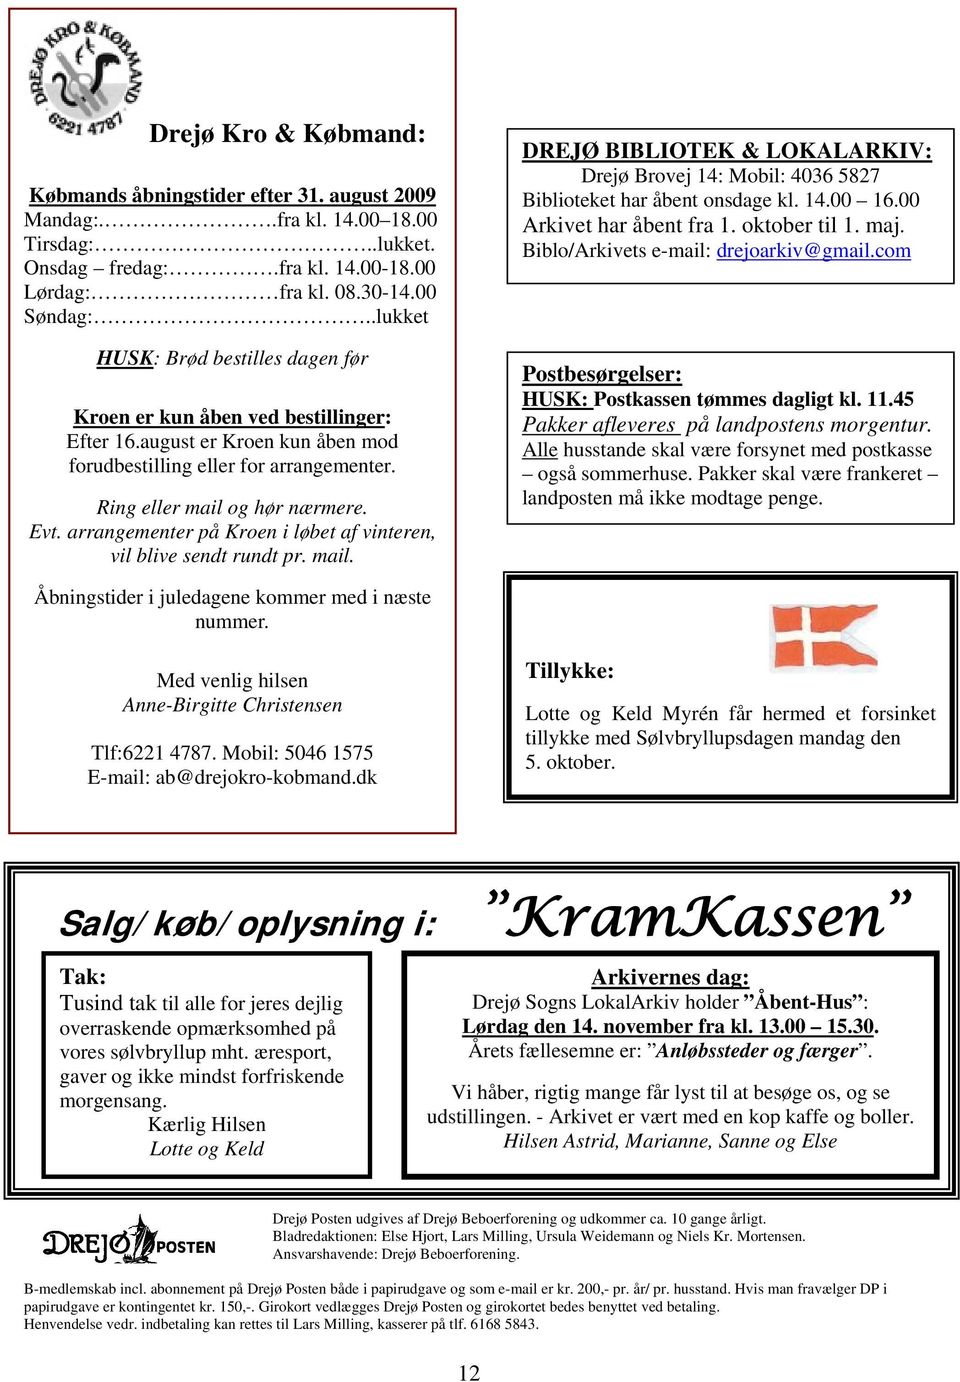 arrangementer på Kroen i løbet af vinteren, vil blive sendt rundt pr. mail. DREJØ BIBLIOTEK & LOKALARKIV: Drejø Brovej 14: Mobil: 4036 5827 Biblioteket har åbent onsdage kl. 14.00 16.